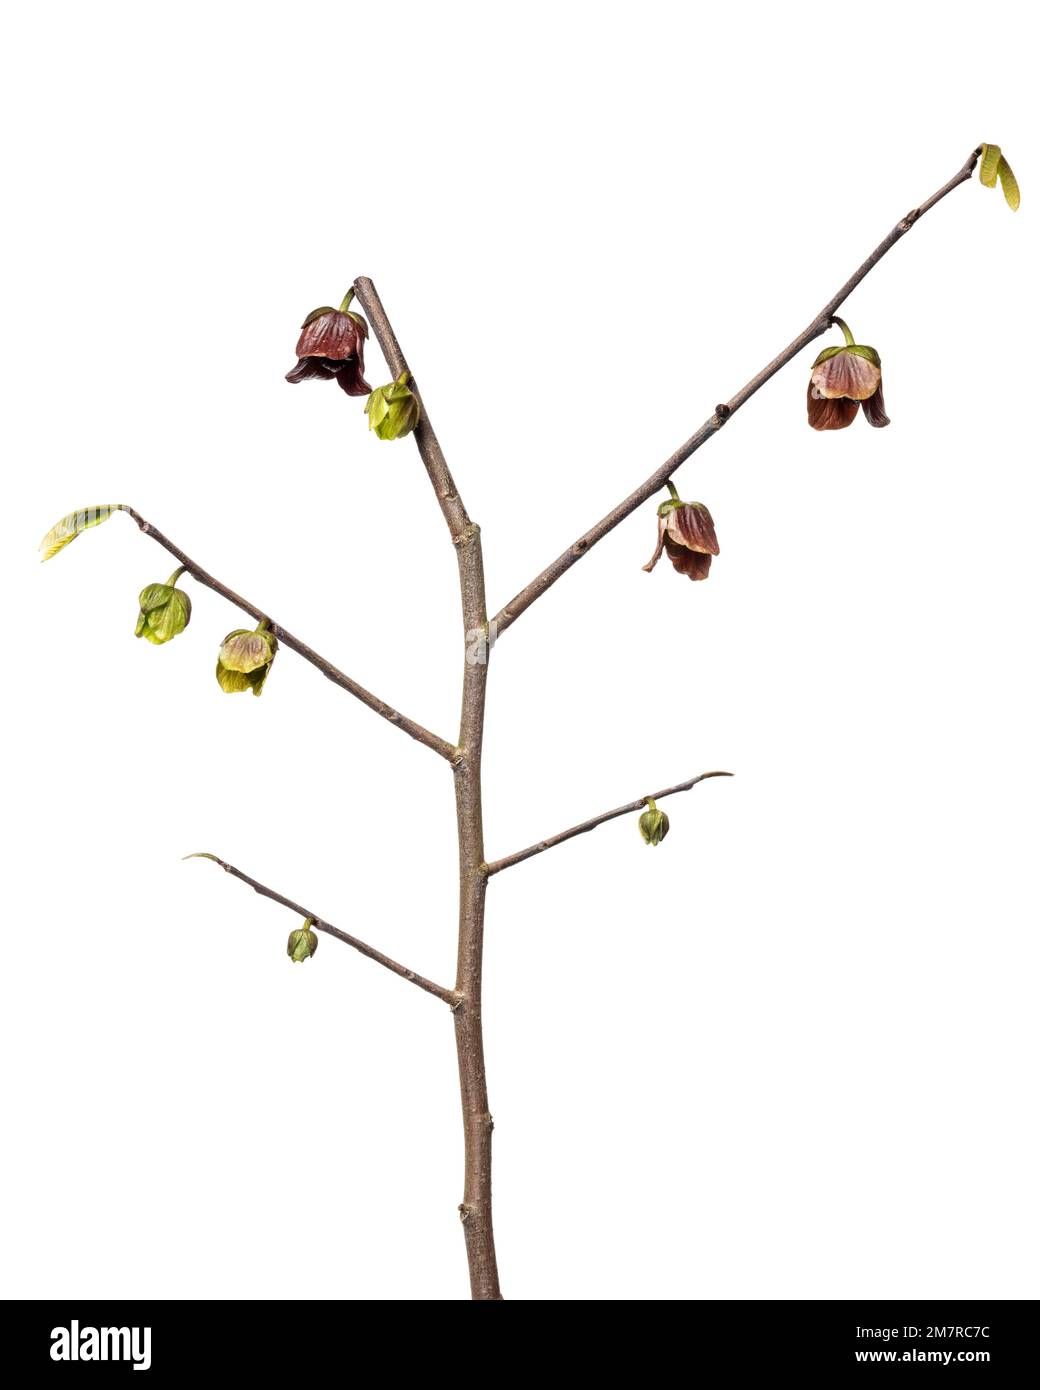 Paw-paw (Asimina triloba), Papau, woody plant, shrub, isolated, white background Stock Photo